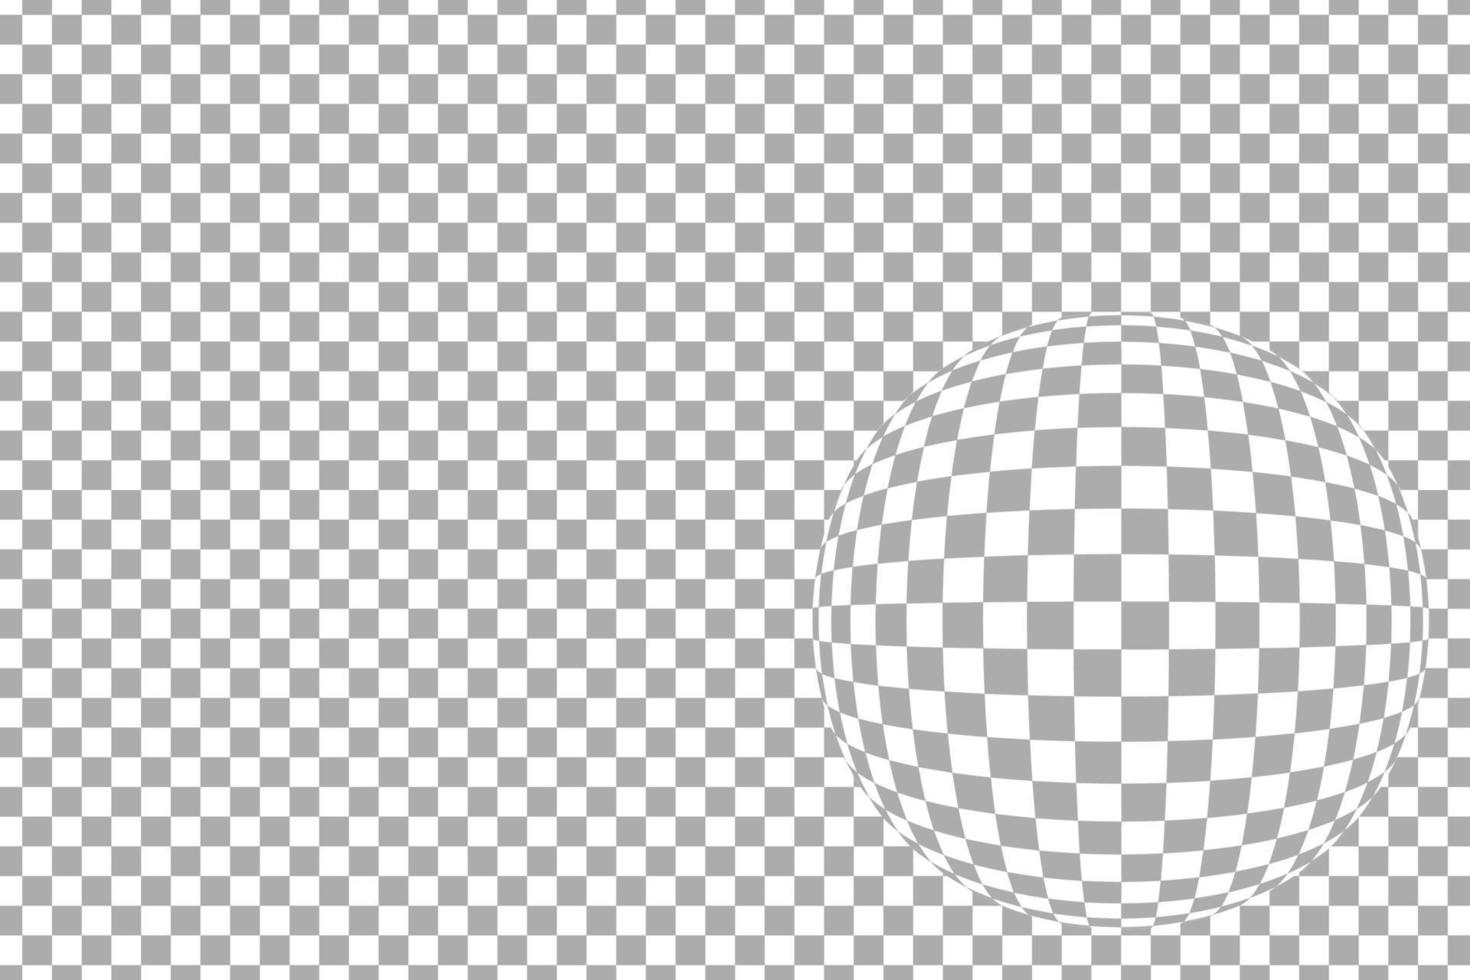 grårutigt mönster horisontellt med fisheye-linseffekt, vektorillustration vektor